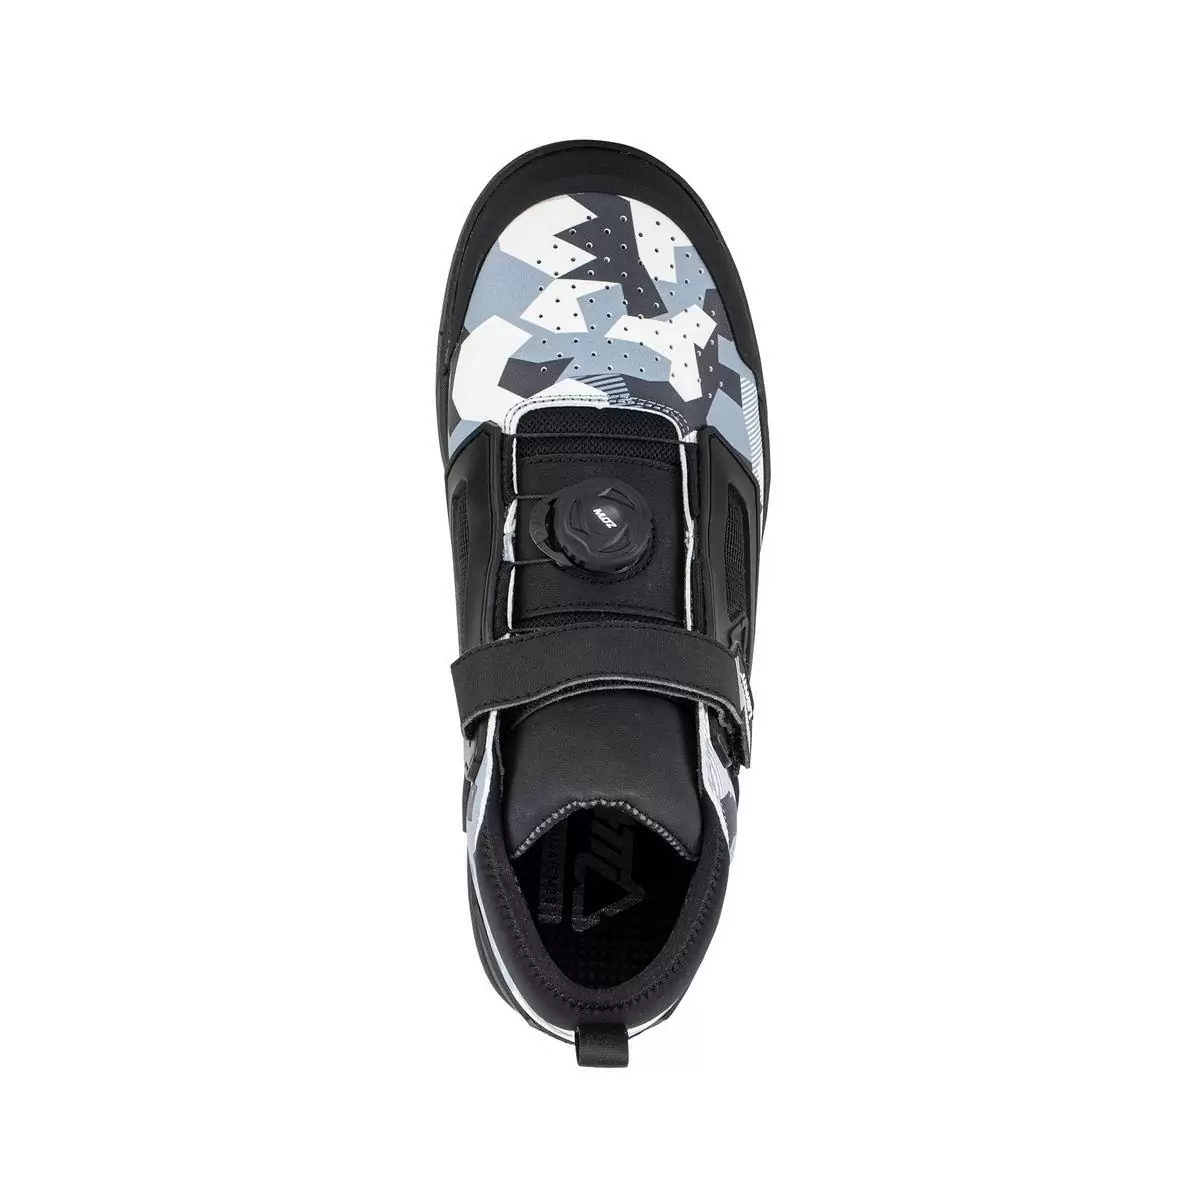 Chaussures VTT 3.0 Flat Pro Blanc/Noir Taille 38.5 #2